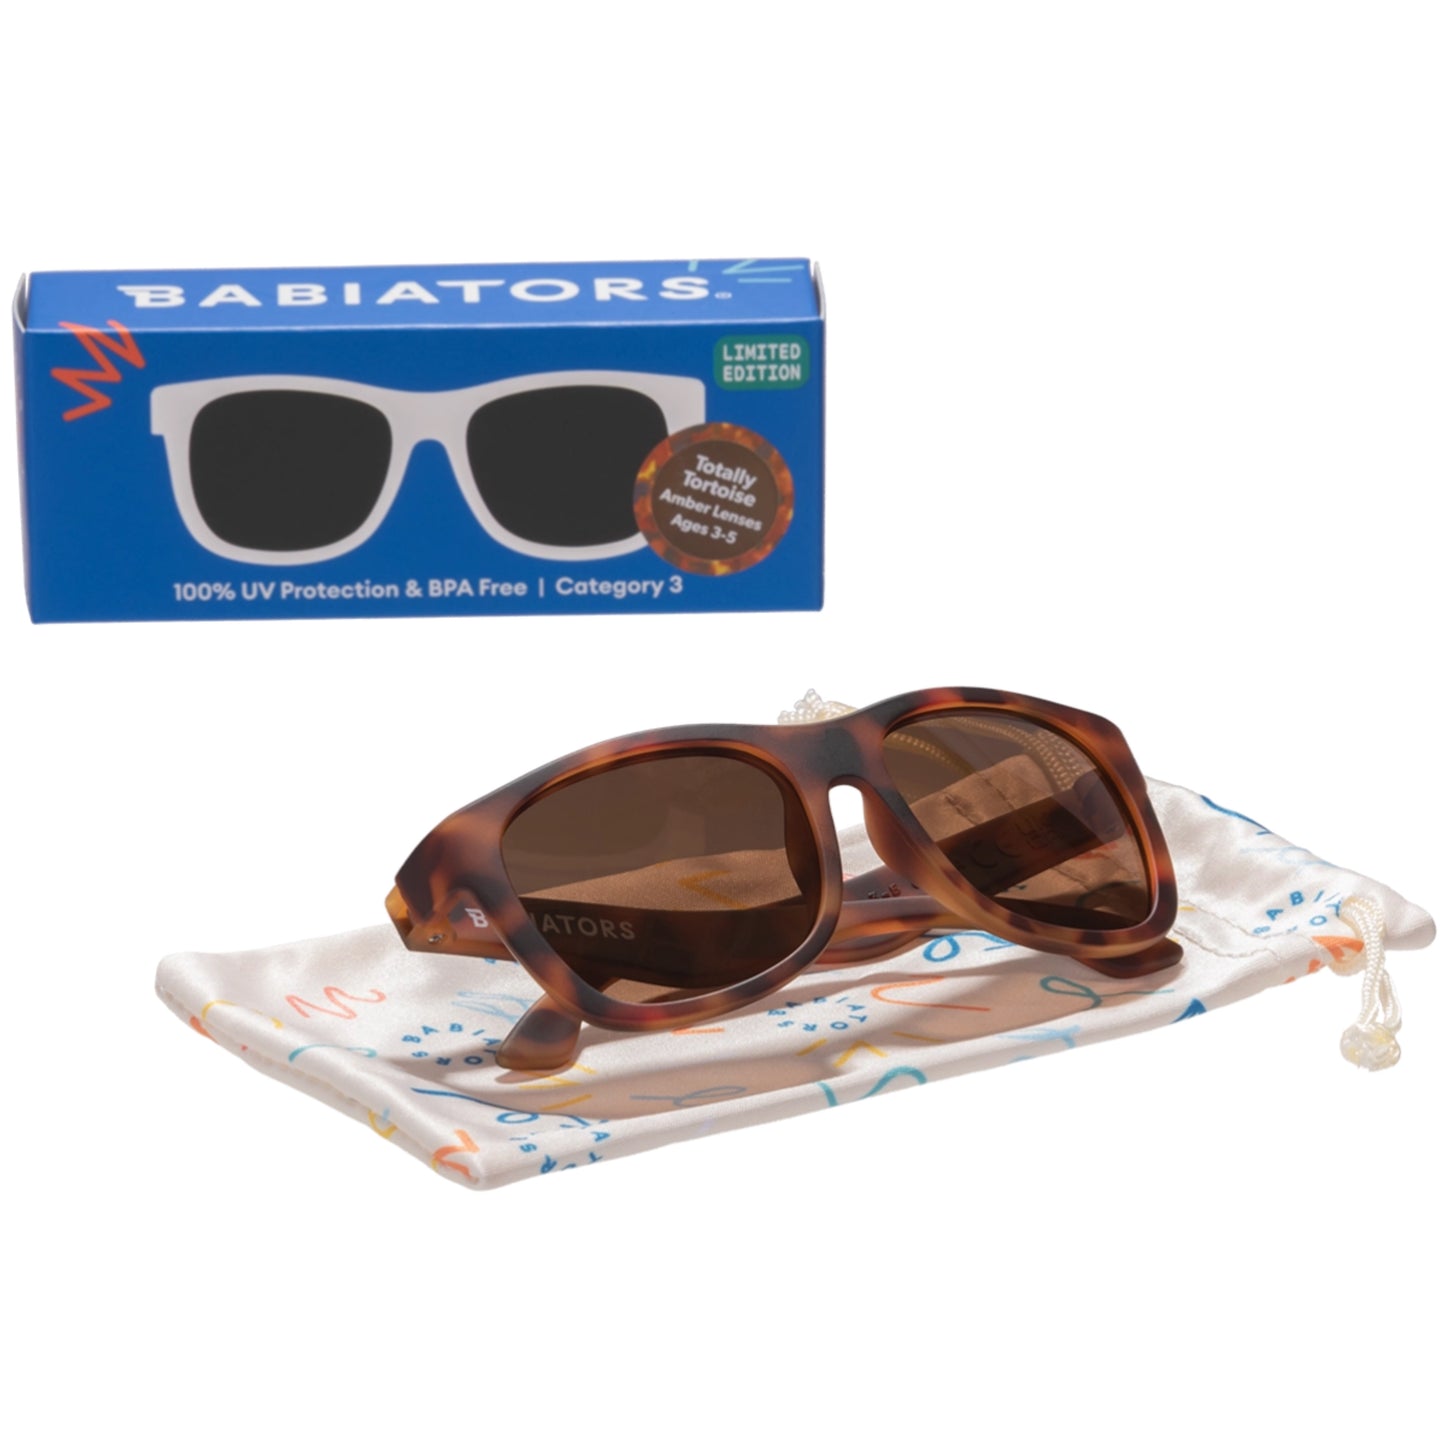 Tortoise Shell Navigator Sunglasses with Amber Lens